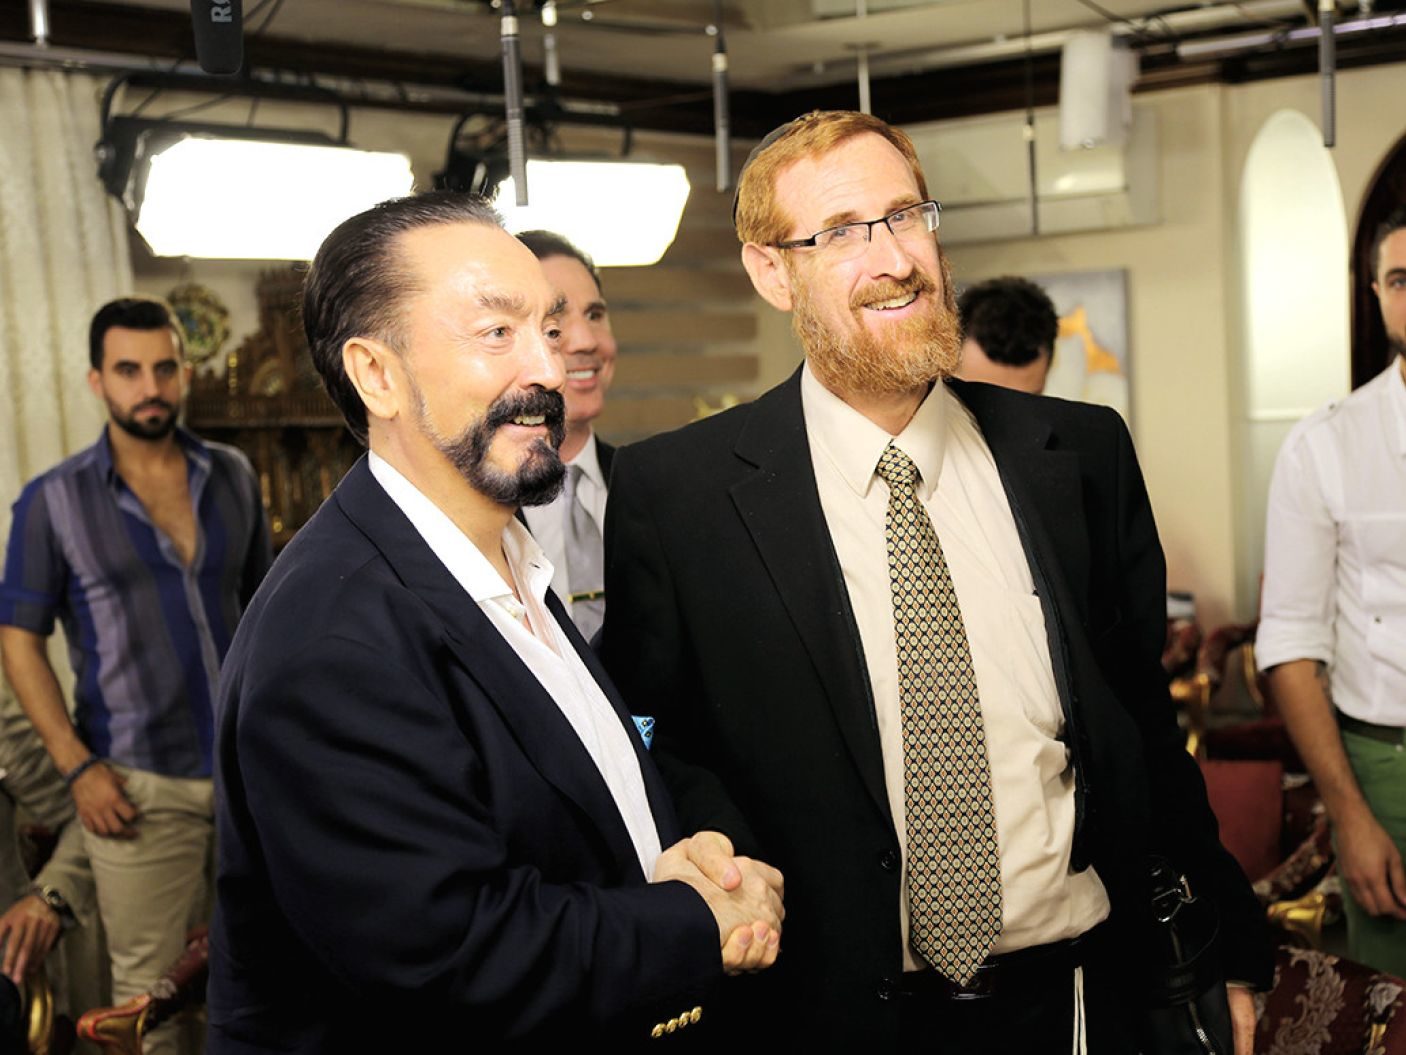 Knesset Member Yehuda Glick with Adnan Oktar.